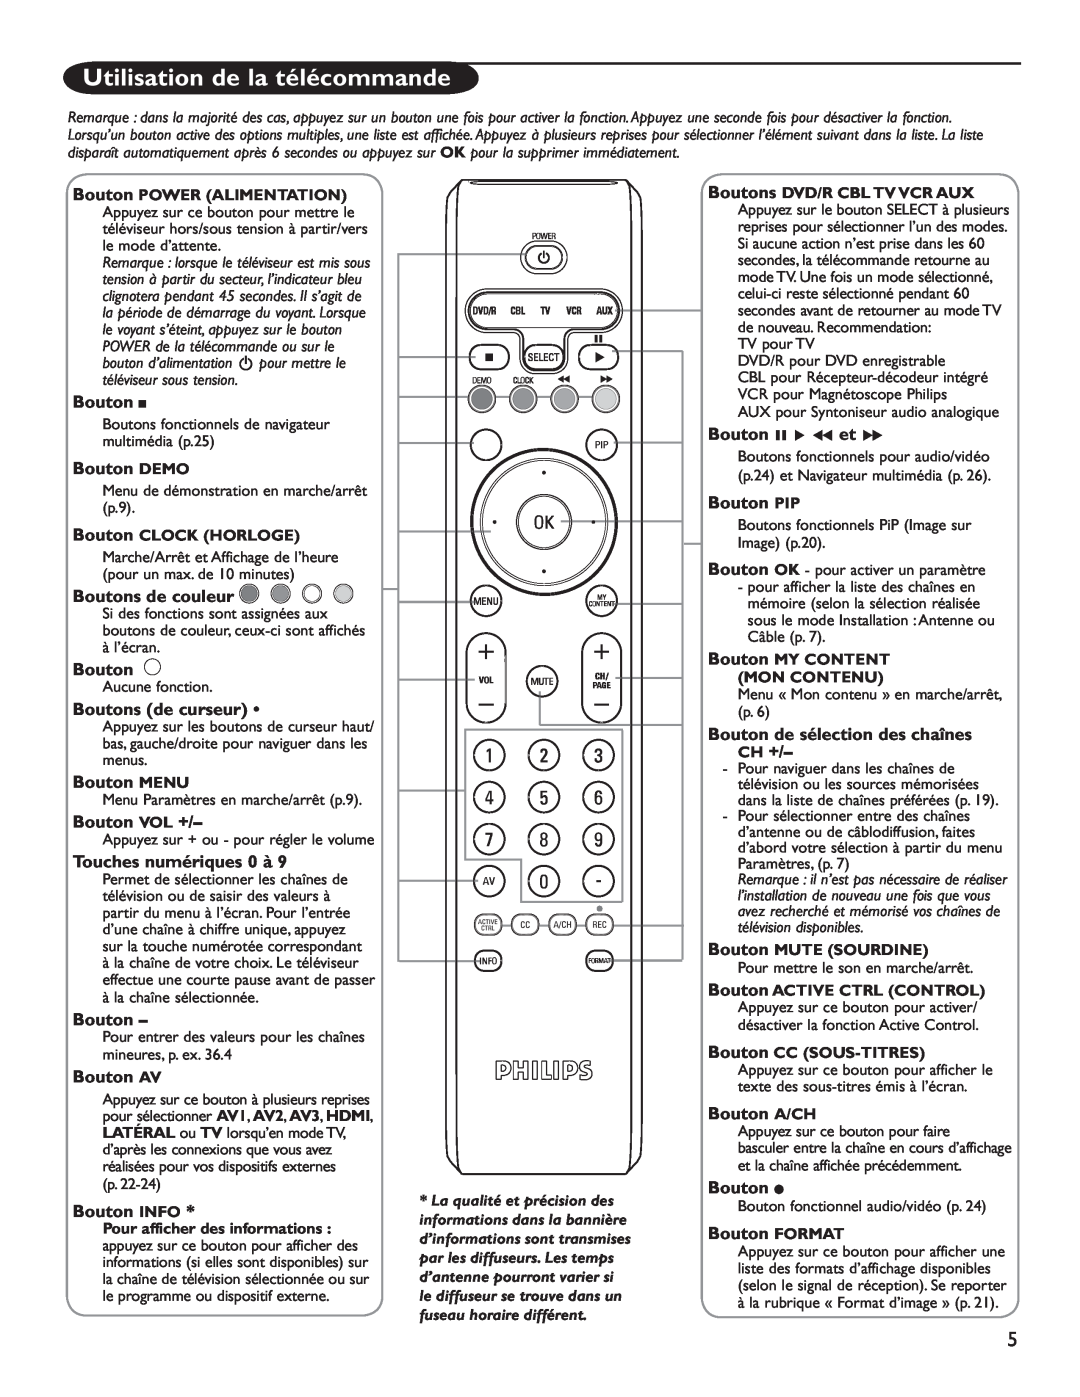 Philips 60PL9220D Utilisation de la télécommande, Bouton DEMO, Boutons de couleur, Boutons de curseur, Bouton MENU 